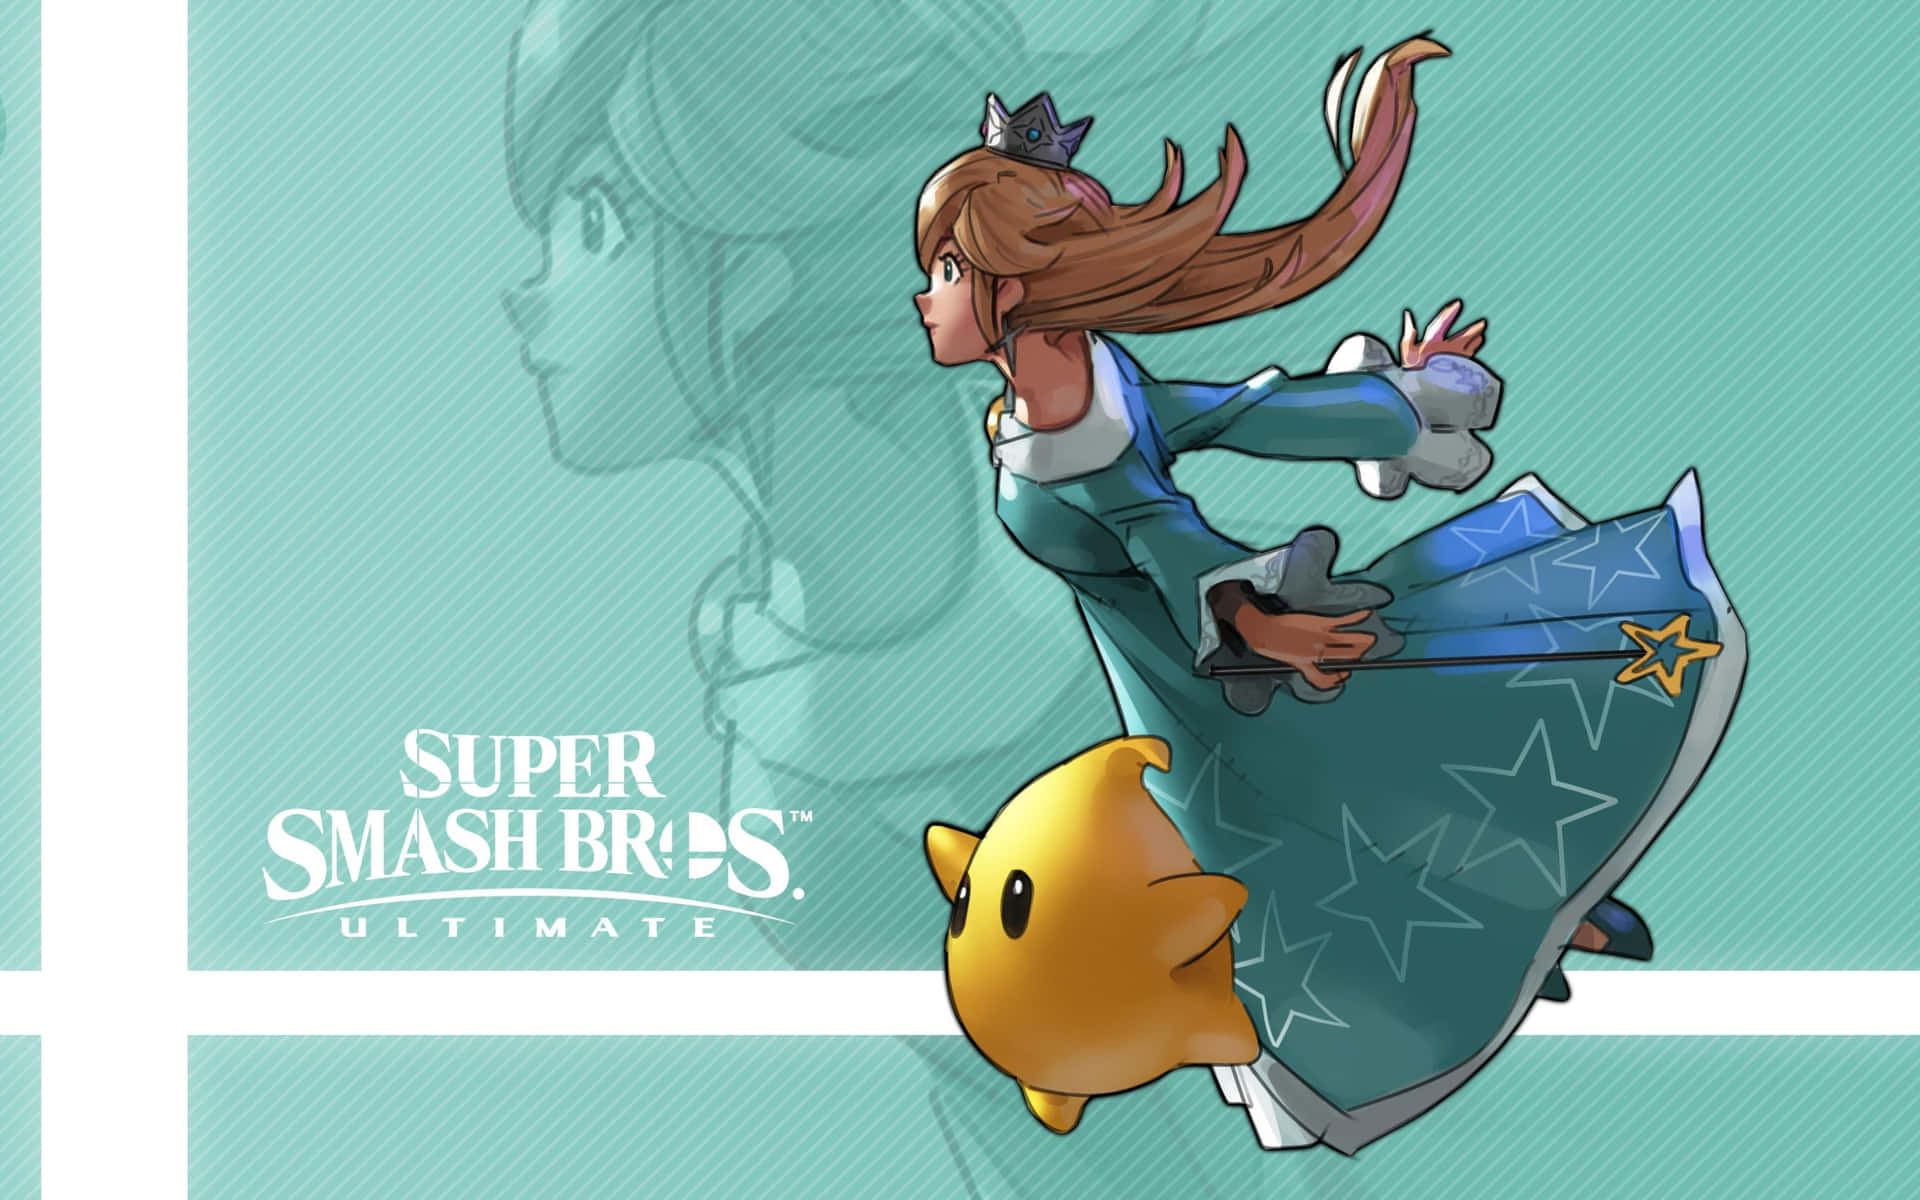 Stunning Princess Rosalina from Super Mario Galaxy Wallpaper